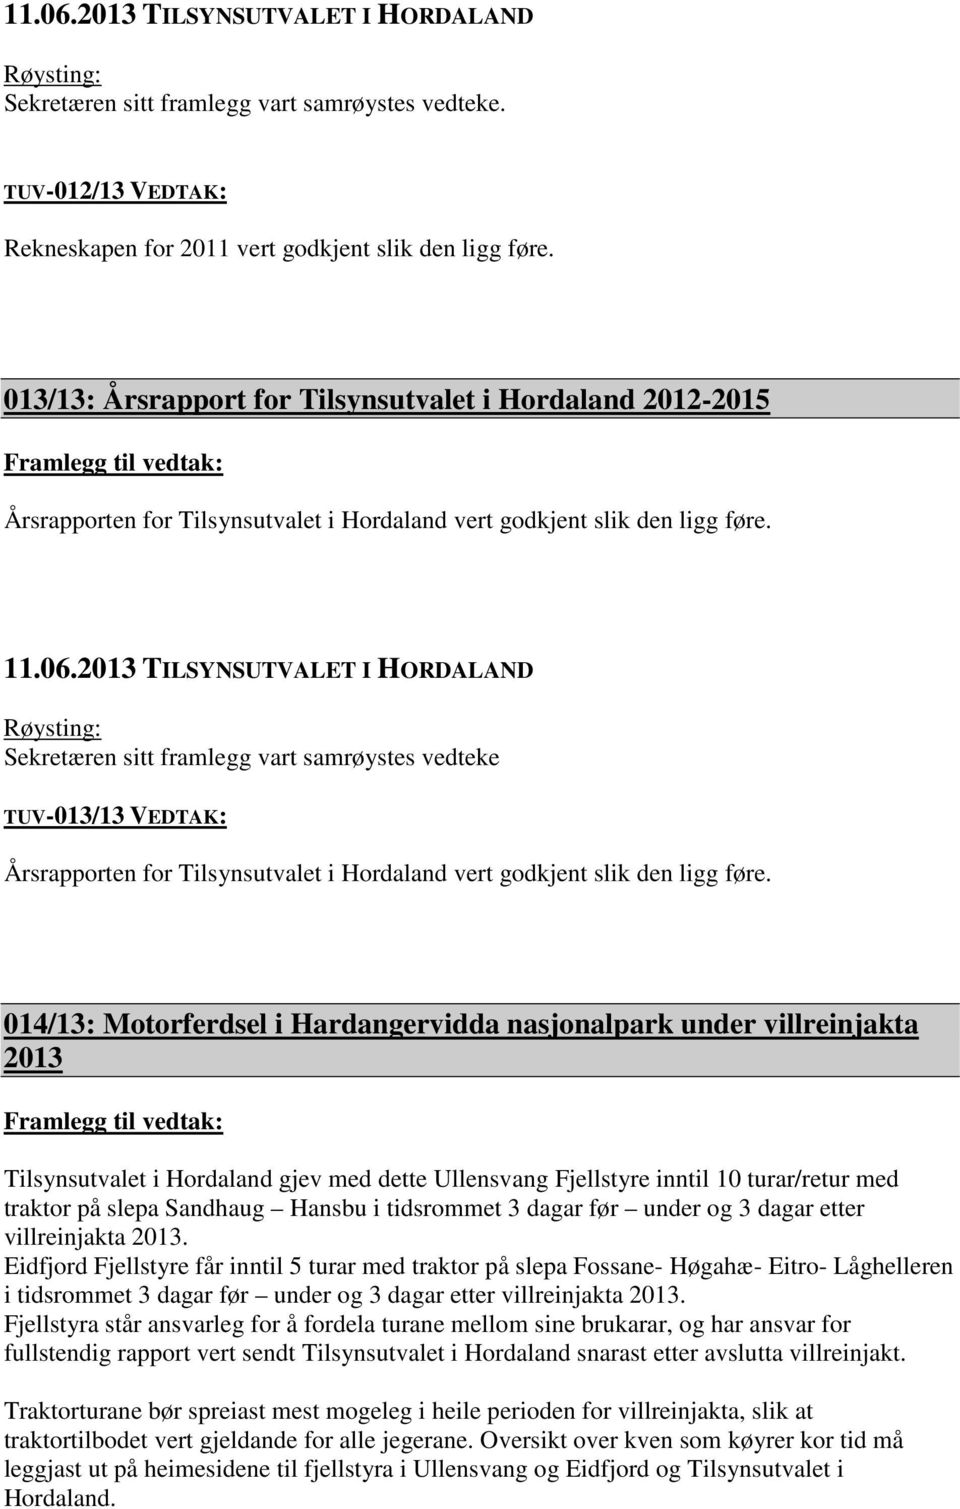 Røysting: Sekretæren sitt framlegg vart samrøystes vedteke TUV-013/13 VEDTAK: Årsrapporten for Tilsynsutvalet i Hordaland vert godkjent slik den ligg føre.